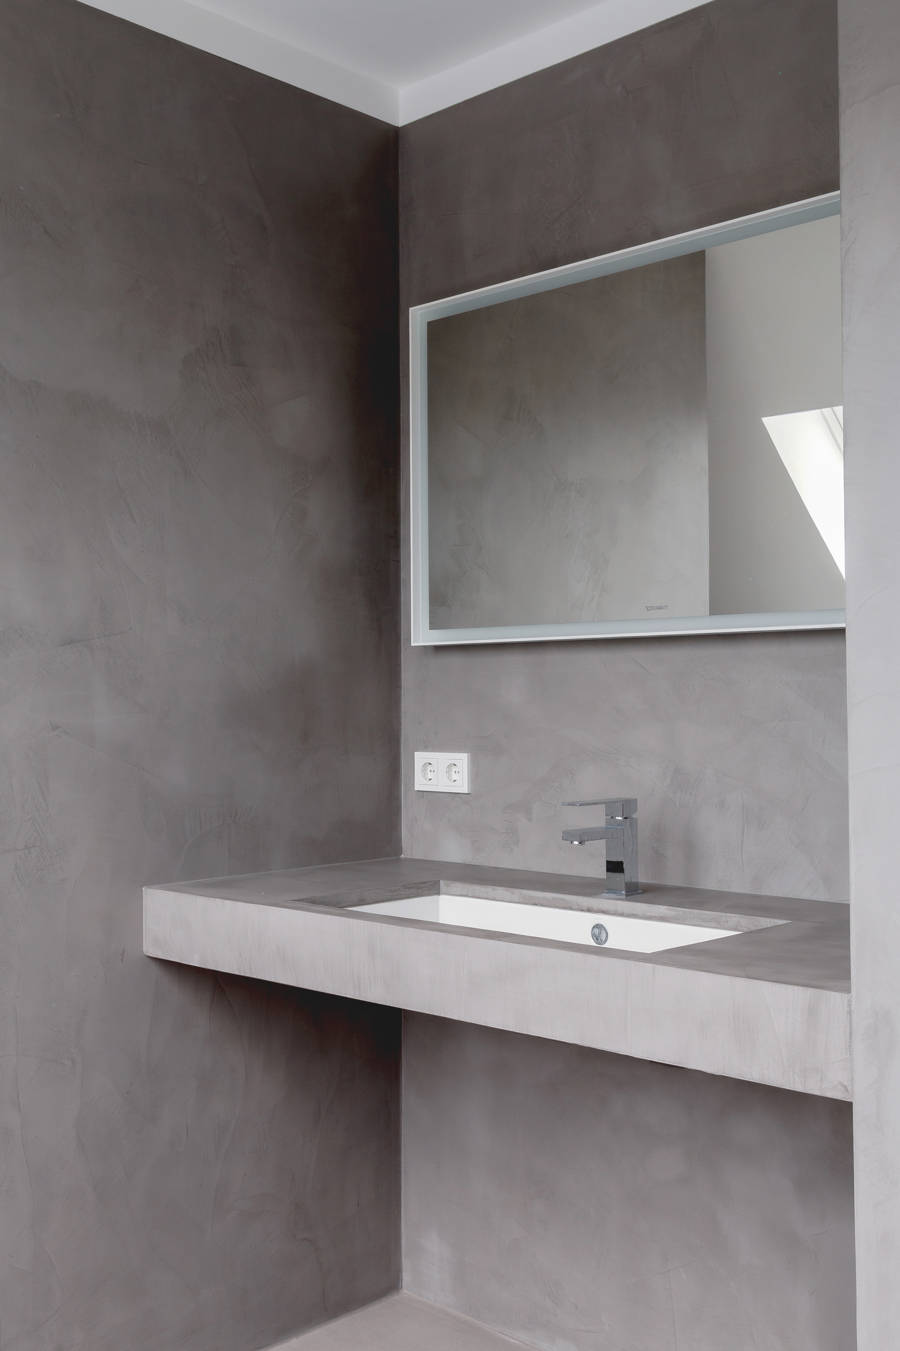 Baño con microcemento de color gris en las paredes, el suelo y la encimera.